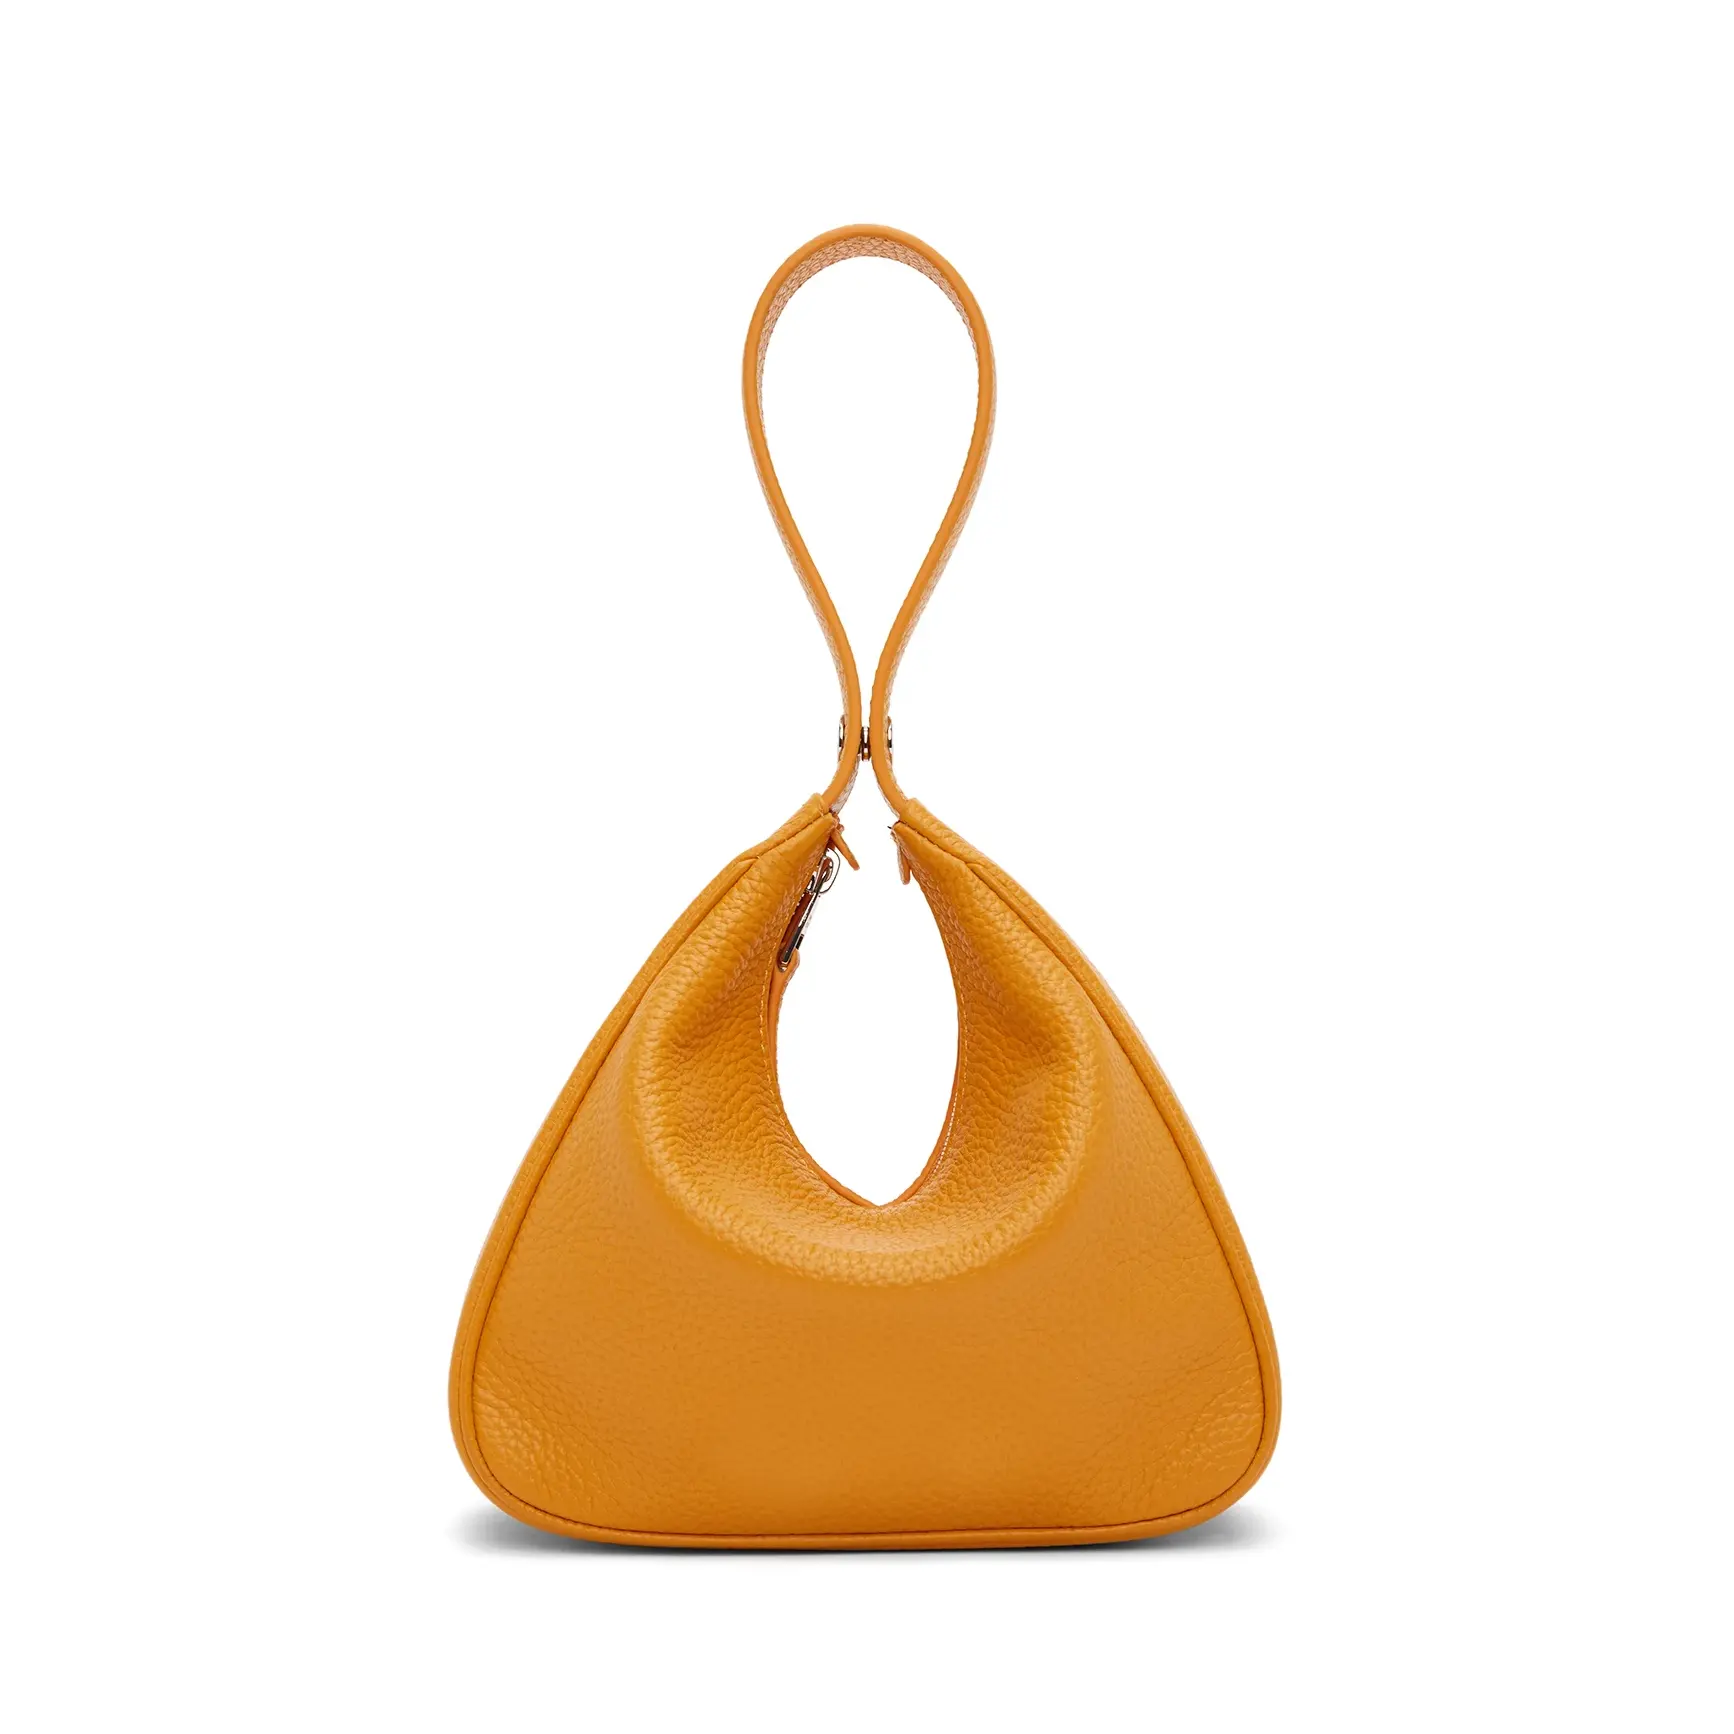 Zincir kaplama deri kayış Hobo çanta moda omuz çantası ünlü Inspired markalar lüks tasarım kadin çanta